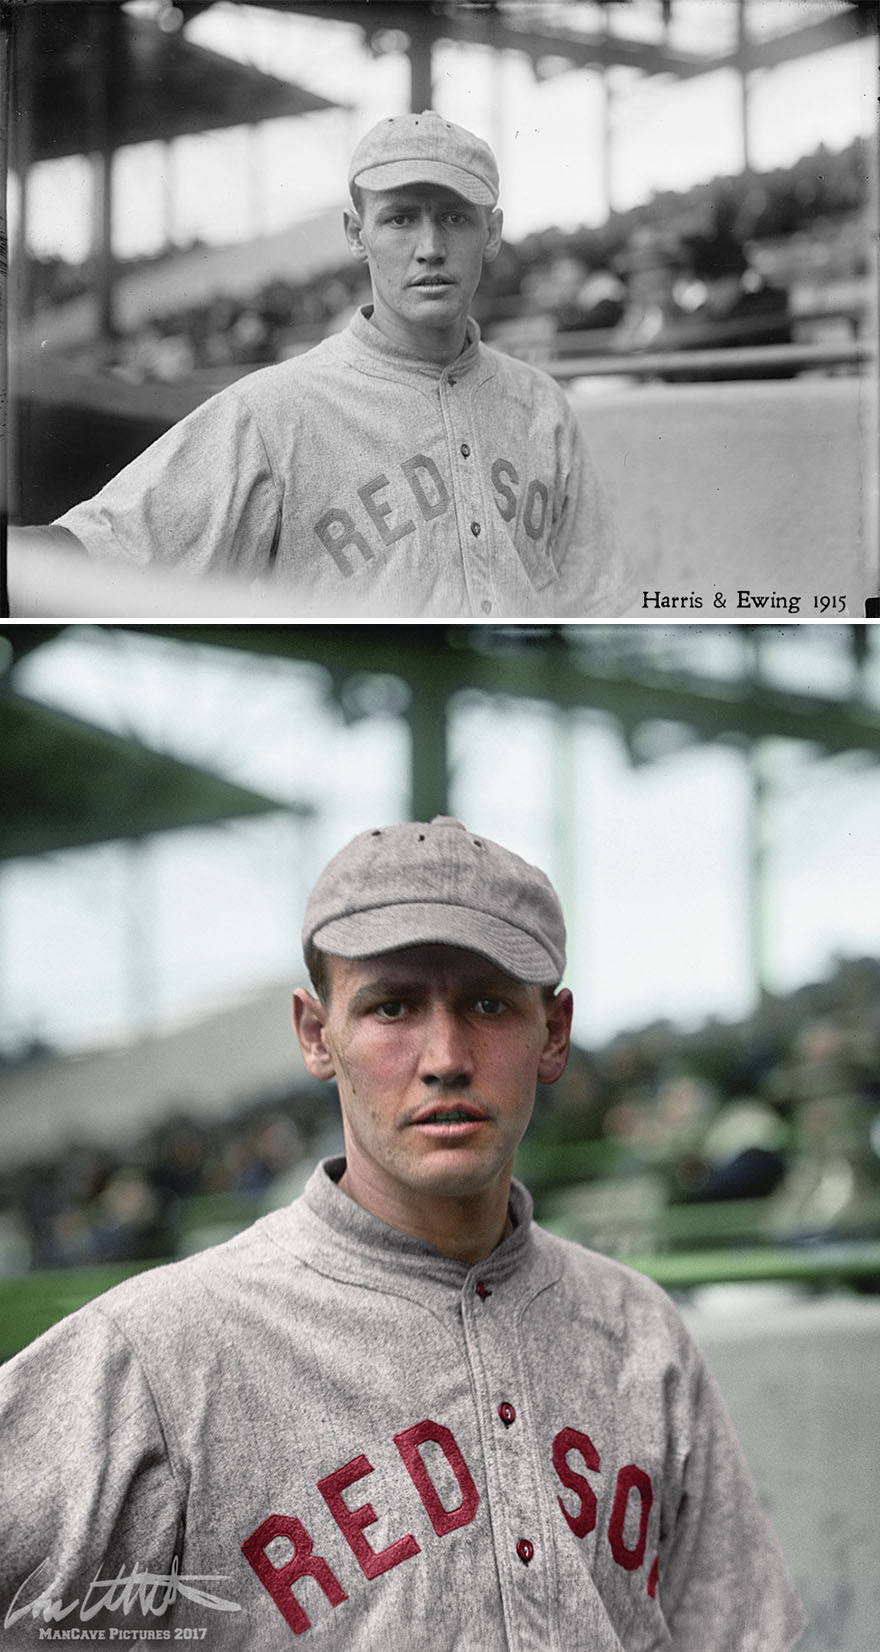 "Smokey" Joe Wood. Boston Red Sox, 1915